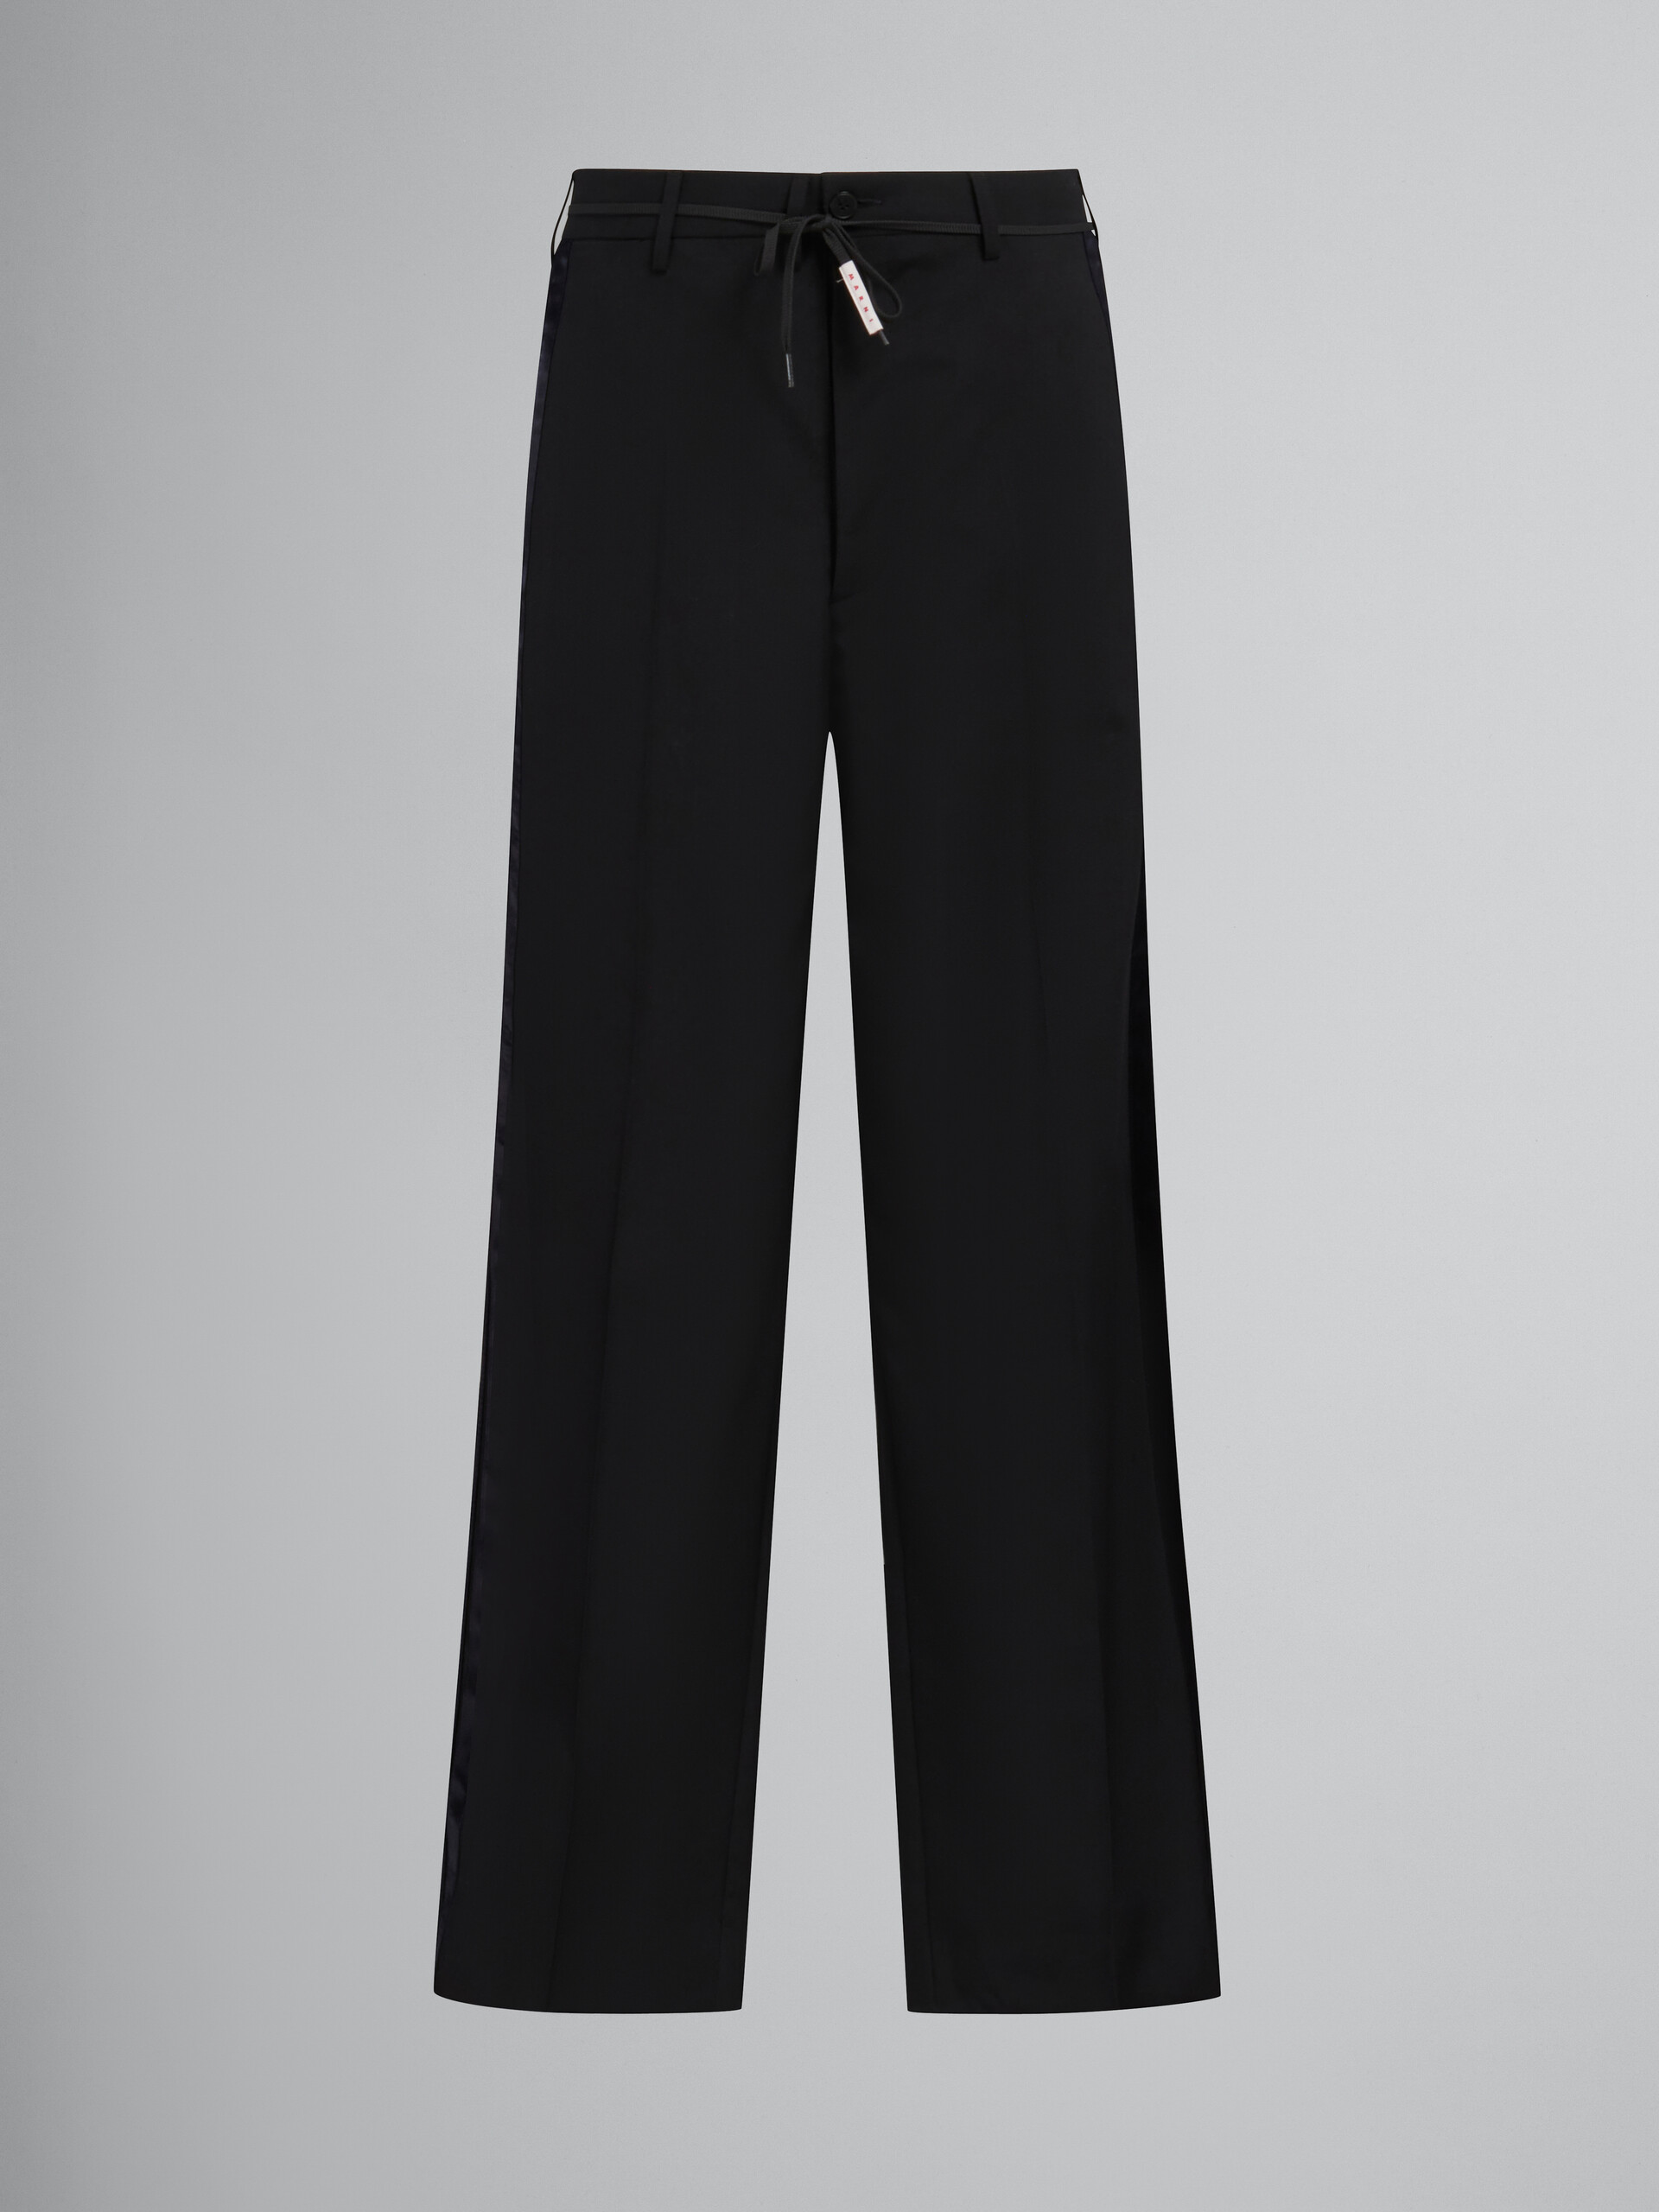 Pantalon en laine tropicale noire avec rayures en satin - Pantalons - Image 1